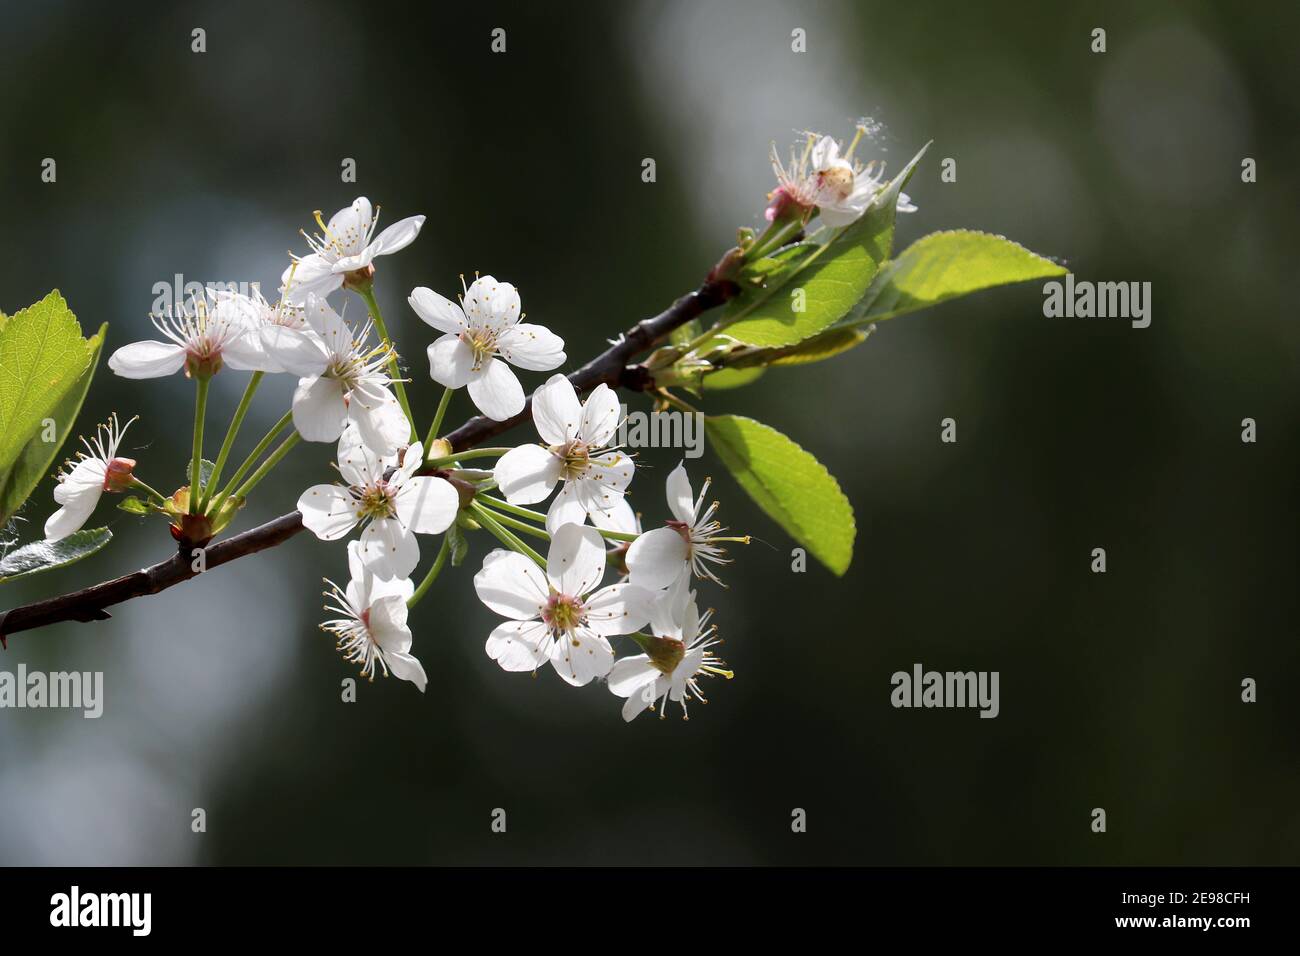 Fleur de cerisier au printemps sur fond flou. Fleurs blanches sur une branche dans un jardin, couleurs douces Banque D'Images